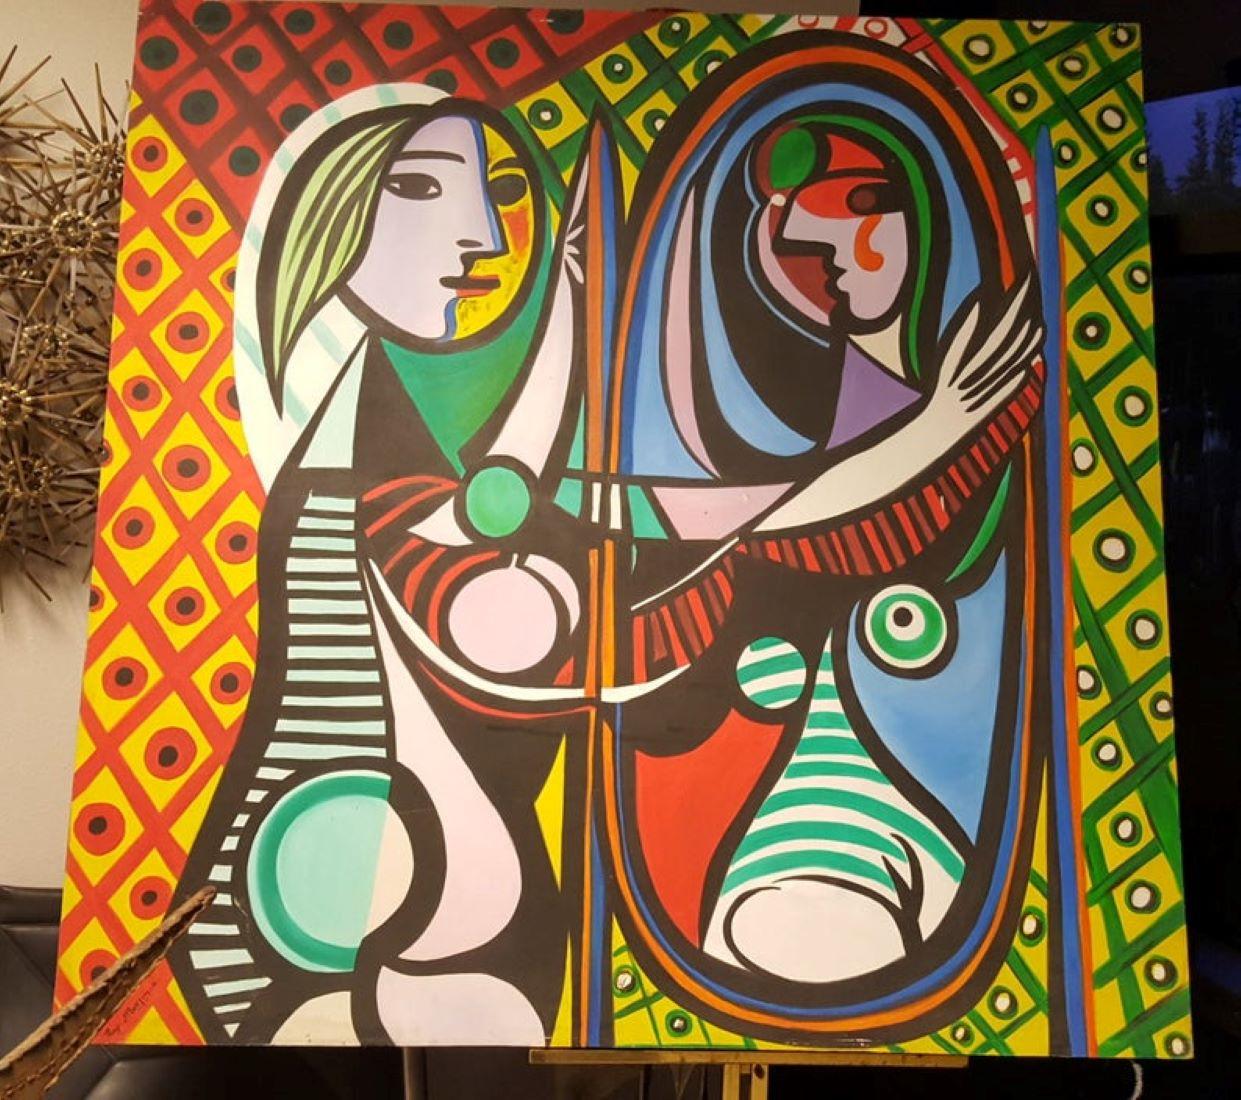 1946 Vintage Ray Martinez, Öl auf Leinwand, Darstellung eines Mädchens vor einem Spiegel.

1946 Öl auf Leinwand, gemalt vom Künstler Ray Martinez während Picassos Kubismus-Periode. Die Leinwand ist auf der Rückseite in Spanisch betitelt und mit